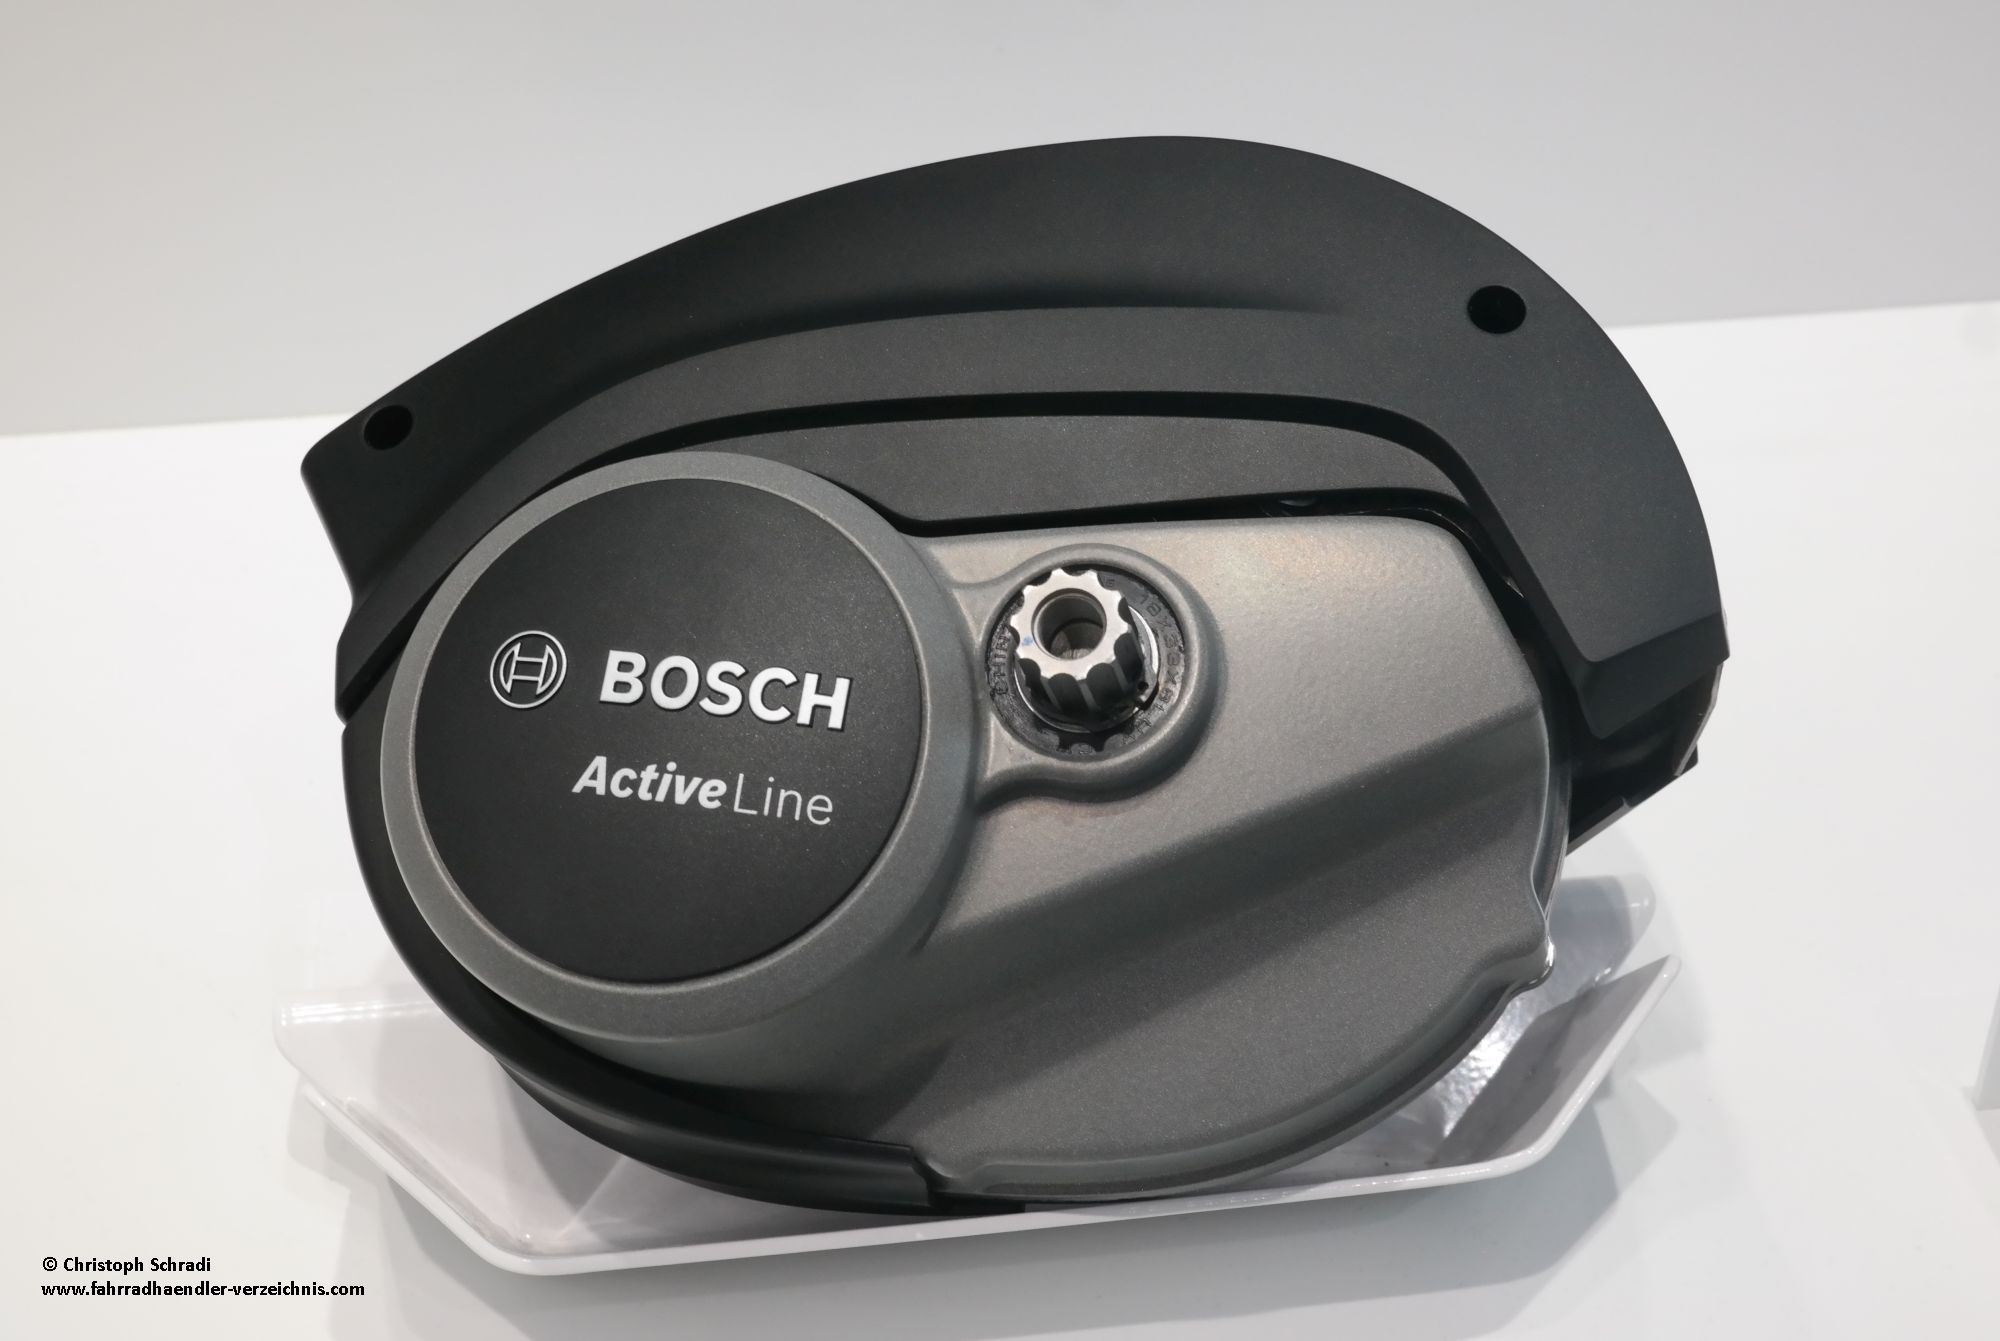 Im Vergleich mit den anderen Bosch Motoren für 2019 ist die Active Line 2018 der schwächste aber auch leichteste Antrieb - 2,9 kg bei 40 Nm Drehmoment